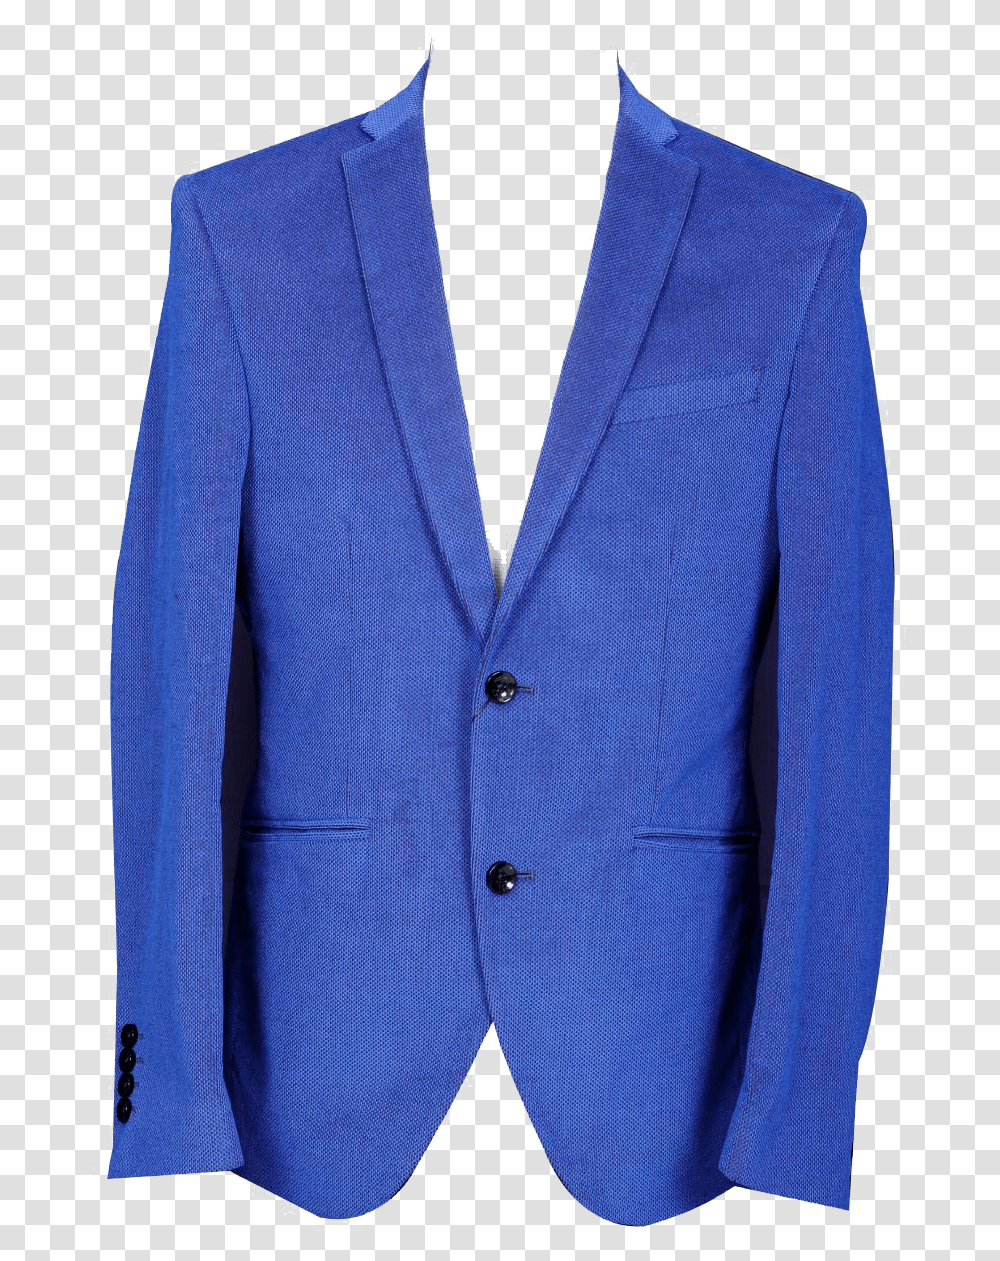 Blue Blazer For Men Free Download Formal Wear, Apparel, Jacket, Coat Transparent Png